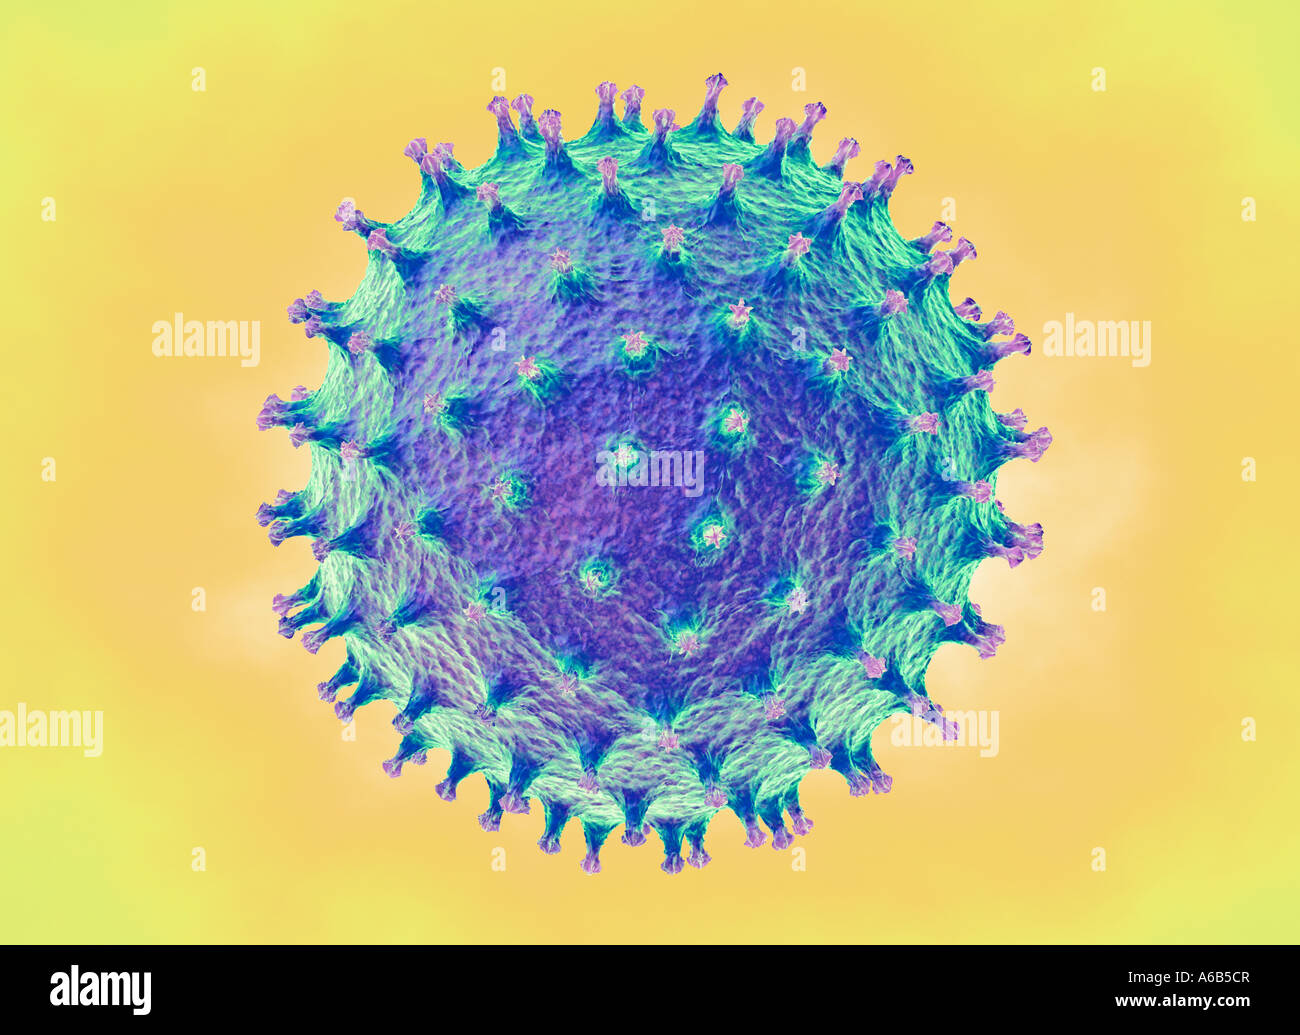 Virus-Symbol von Virus-Krankheiten wie Grippe Vogel Grippe Schweinegrippe Noro Norwalk Infektion Krankheit epidemische Pandemie Pandemie Stockfoto